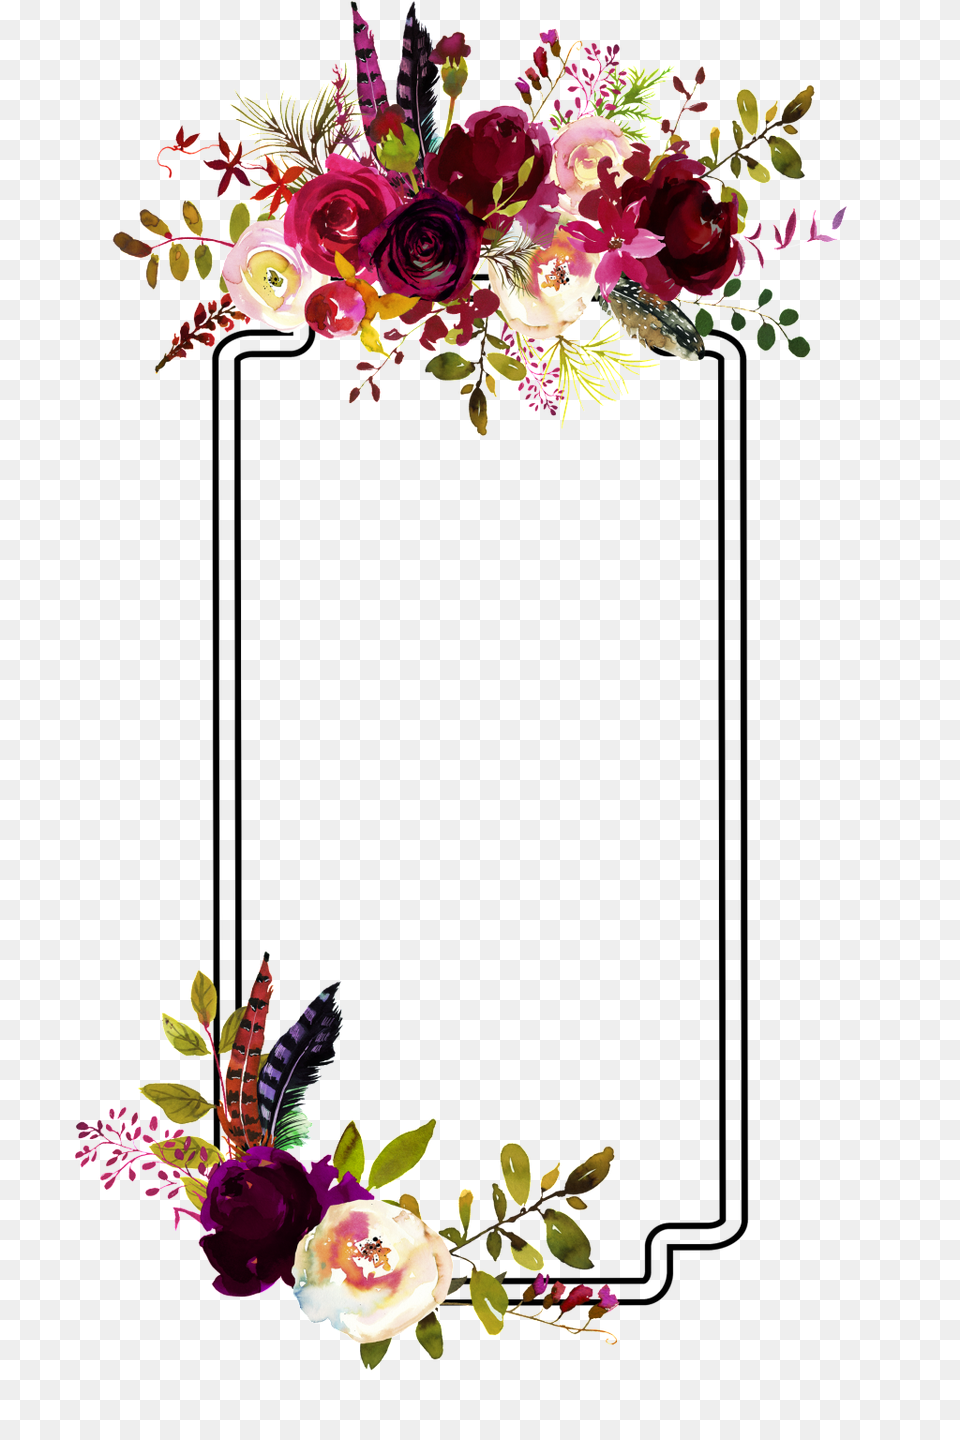 Flower Decorative Border Picture Download Vector, Art, Floral Design, Flower Arrangement, Flower Bouquet Free Transparent Png